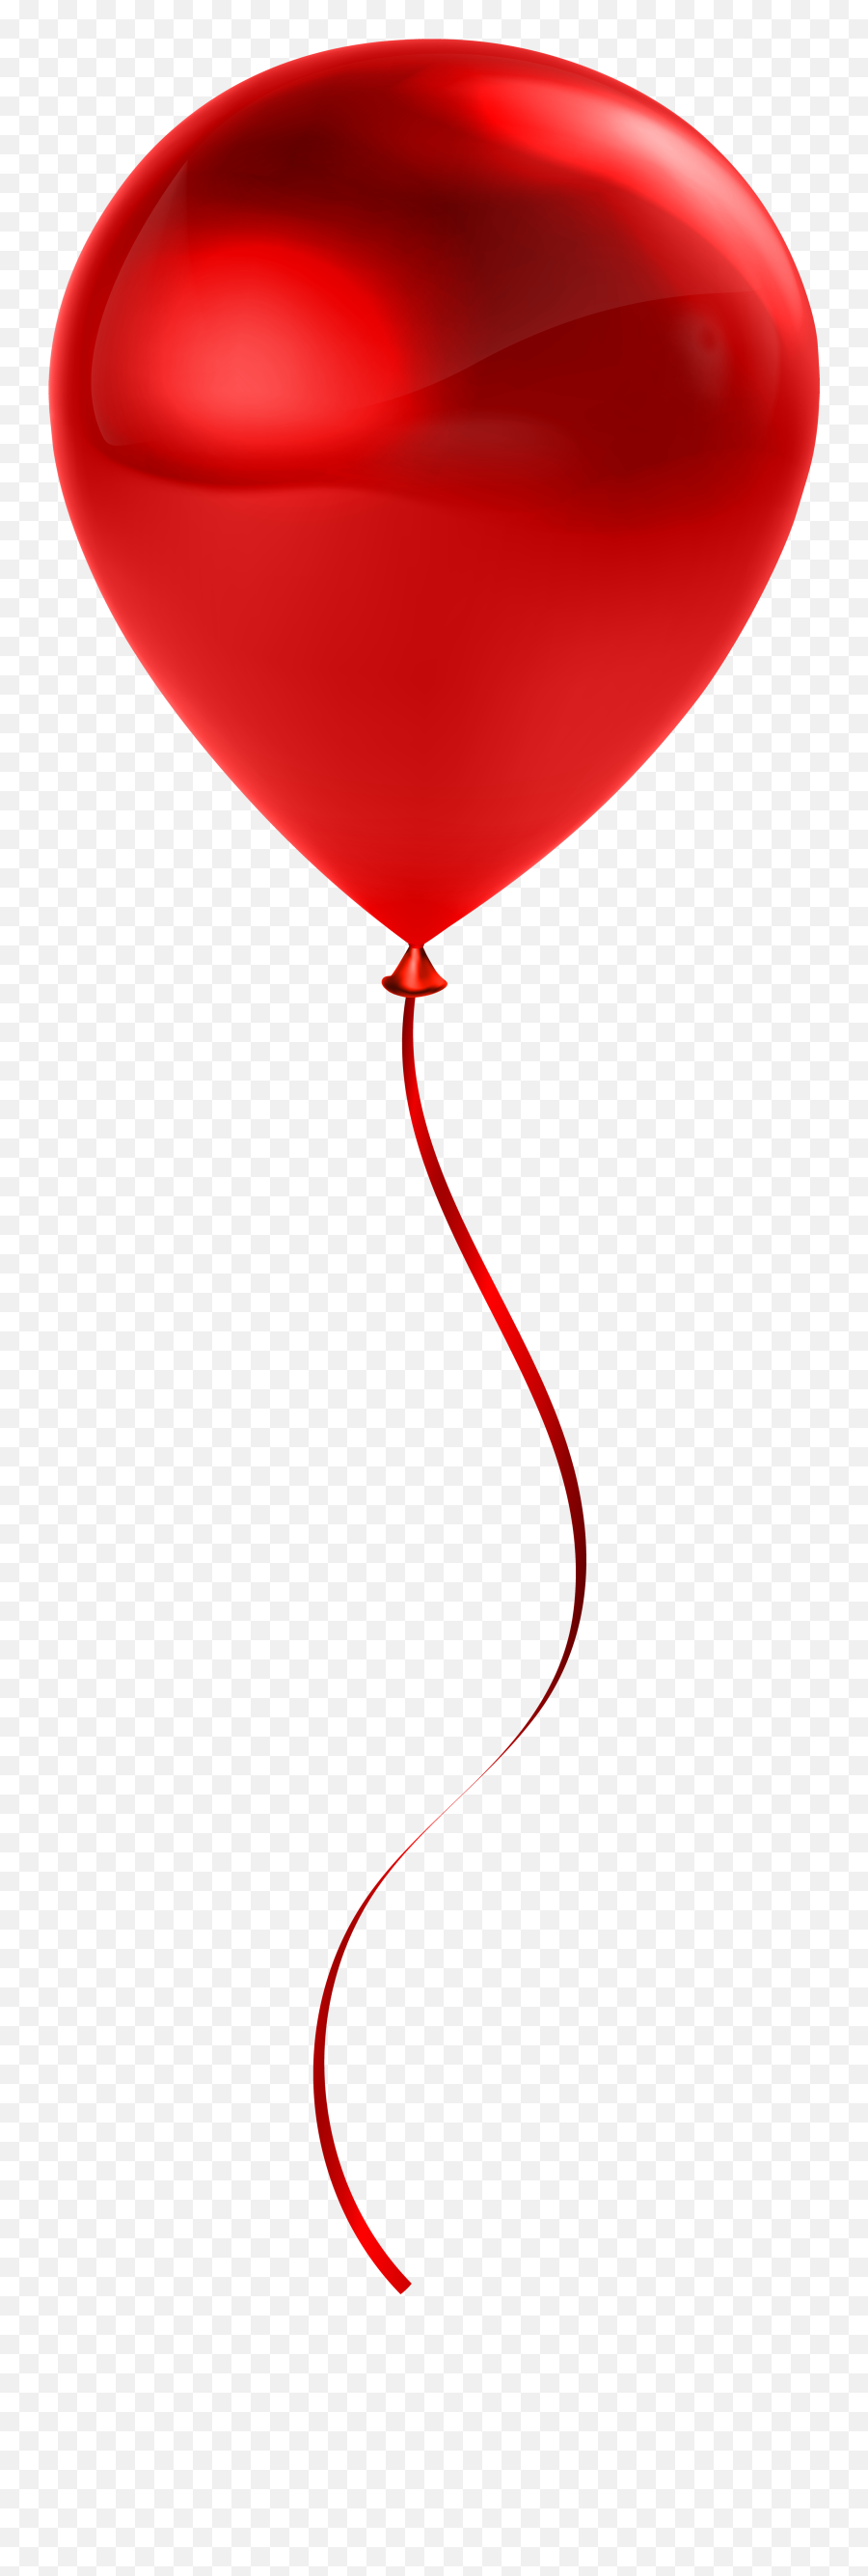 Free Red Balloon Transparent Download Free Clip Art Free - Red Balloon Transparent Emoji,Red Balloon Emoji